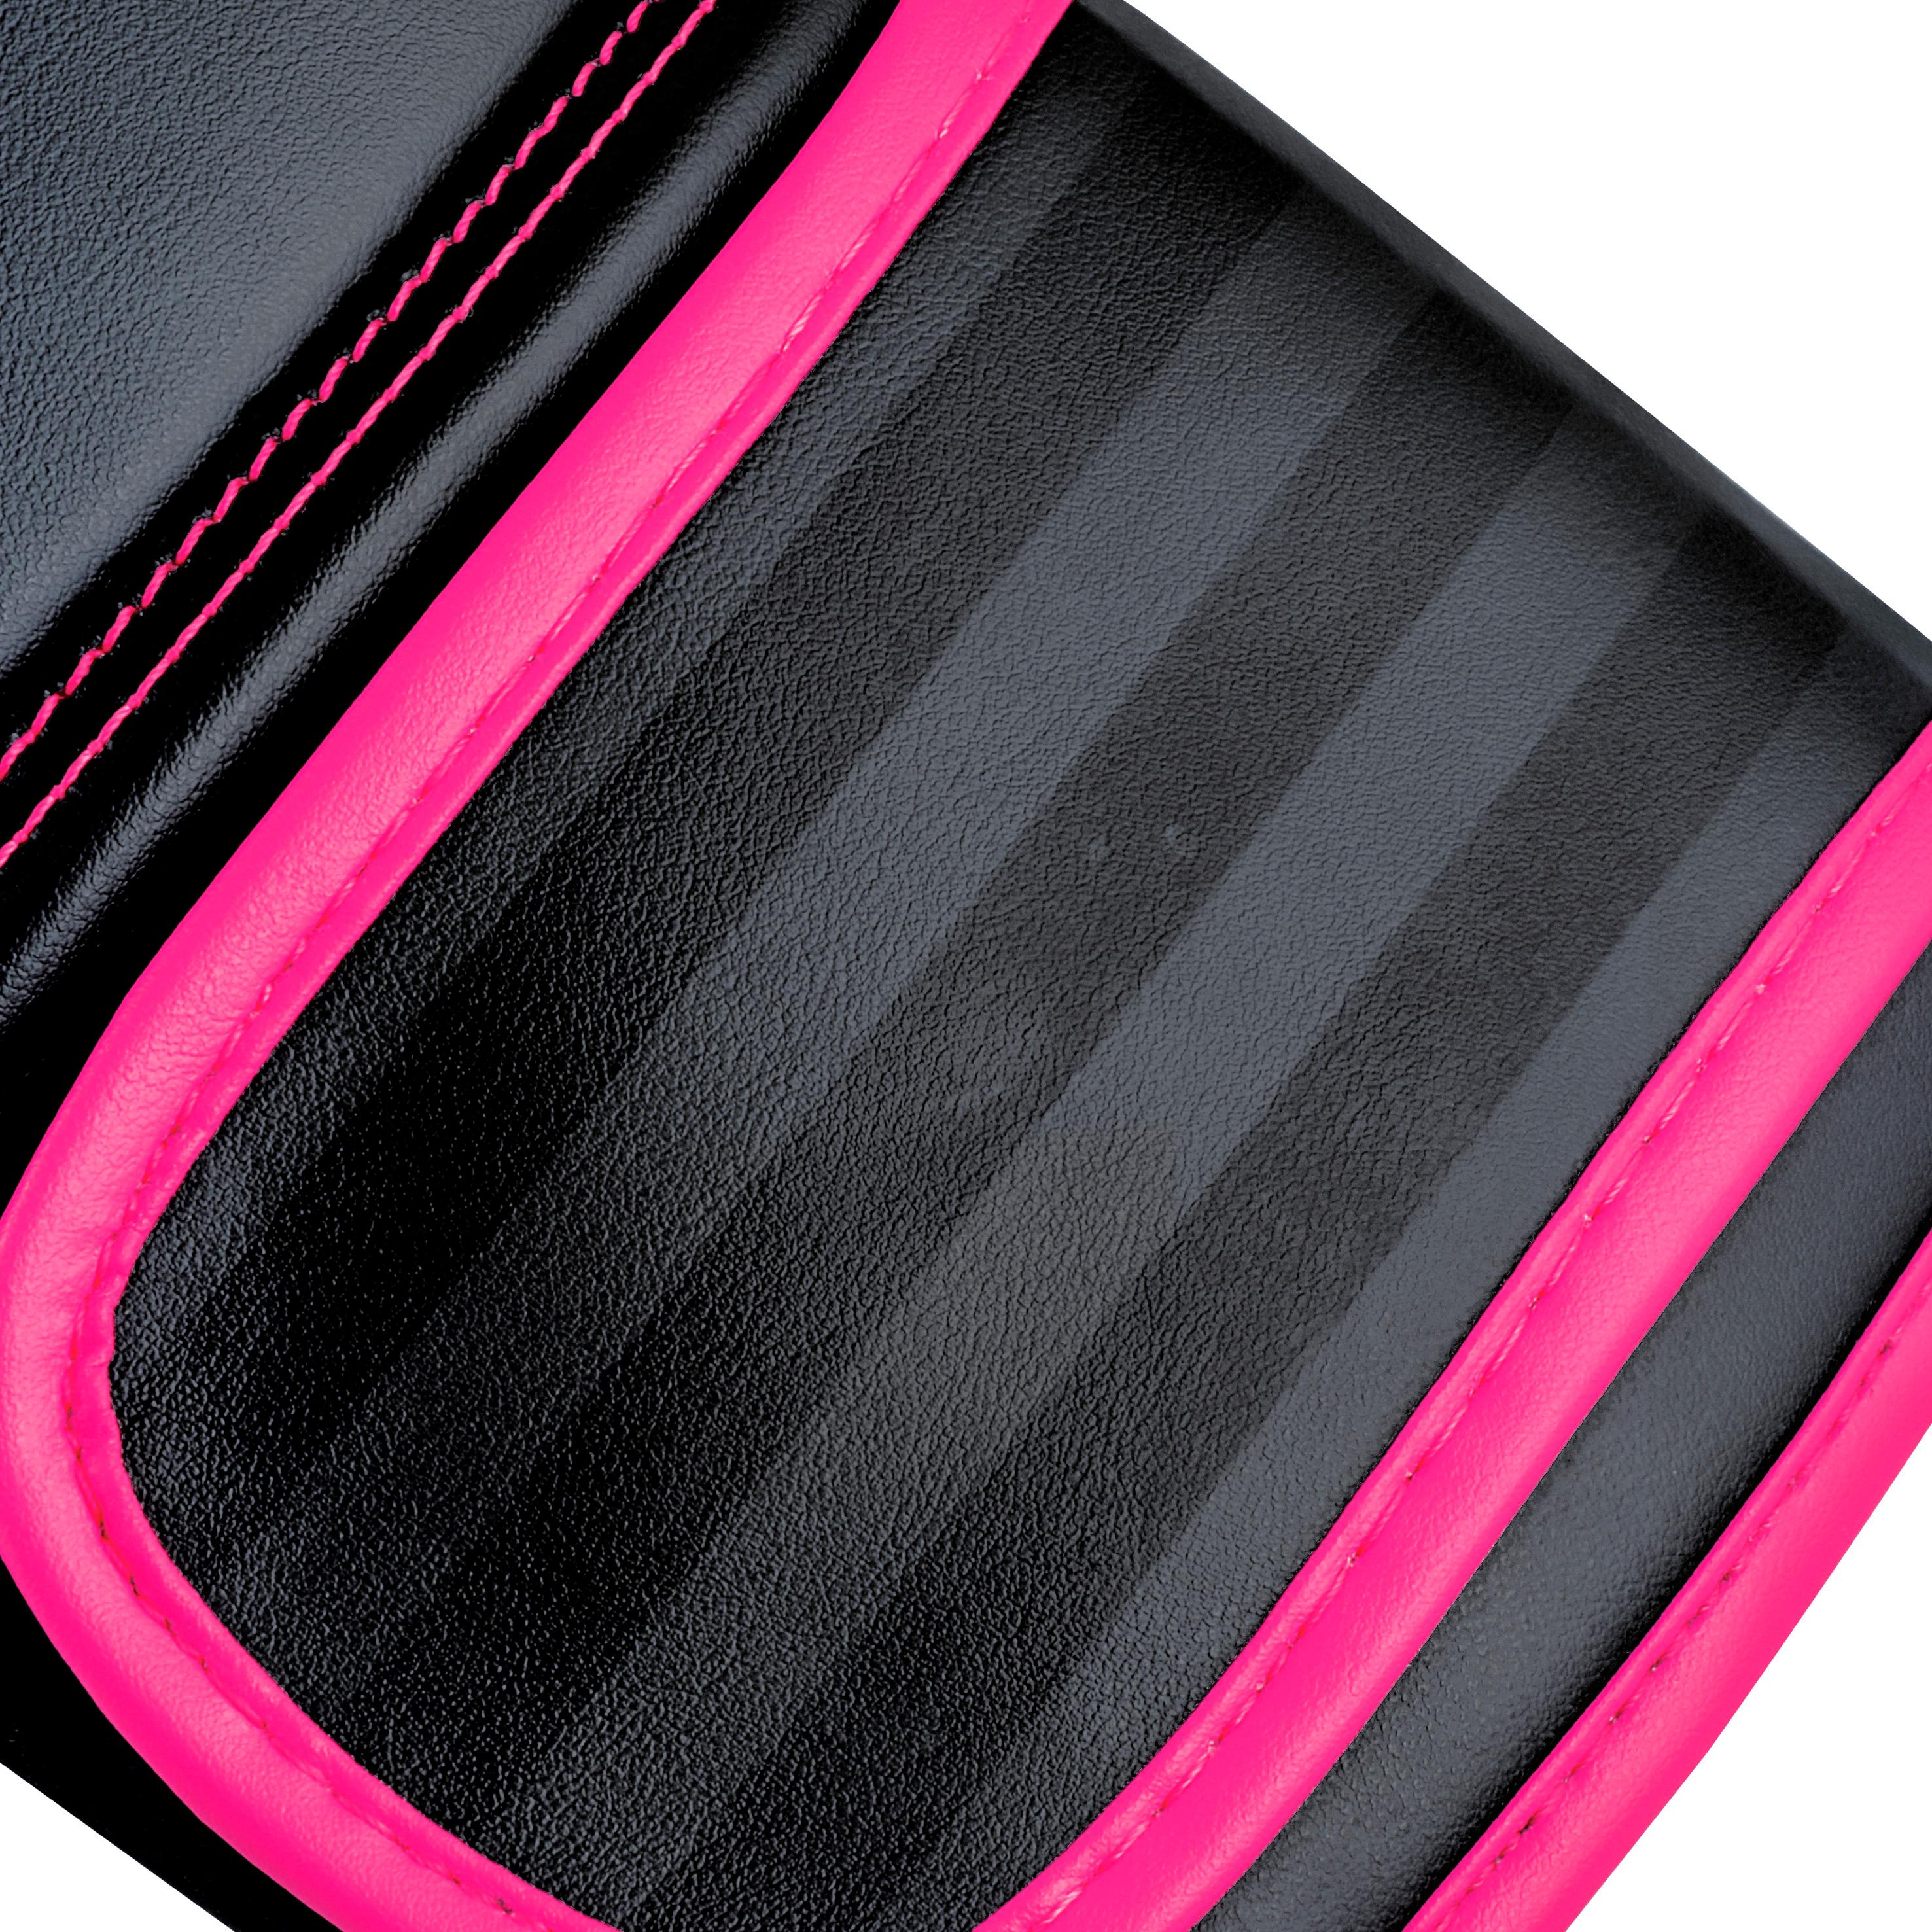 Hybrid schwarz-pink von SportScheck Adidas 80 Online kaufen im Shop Boxhandschuhe